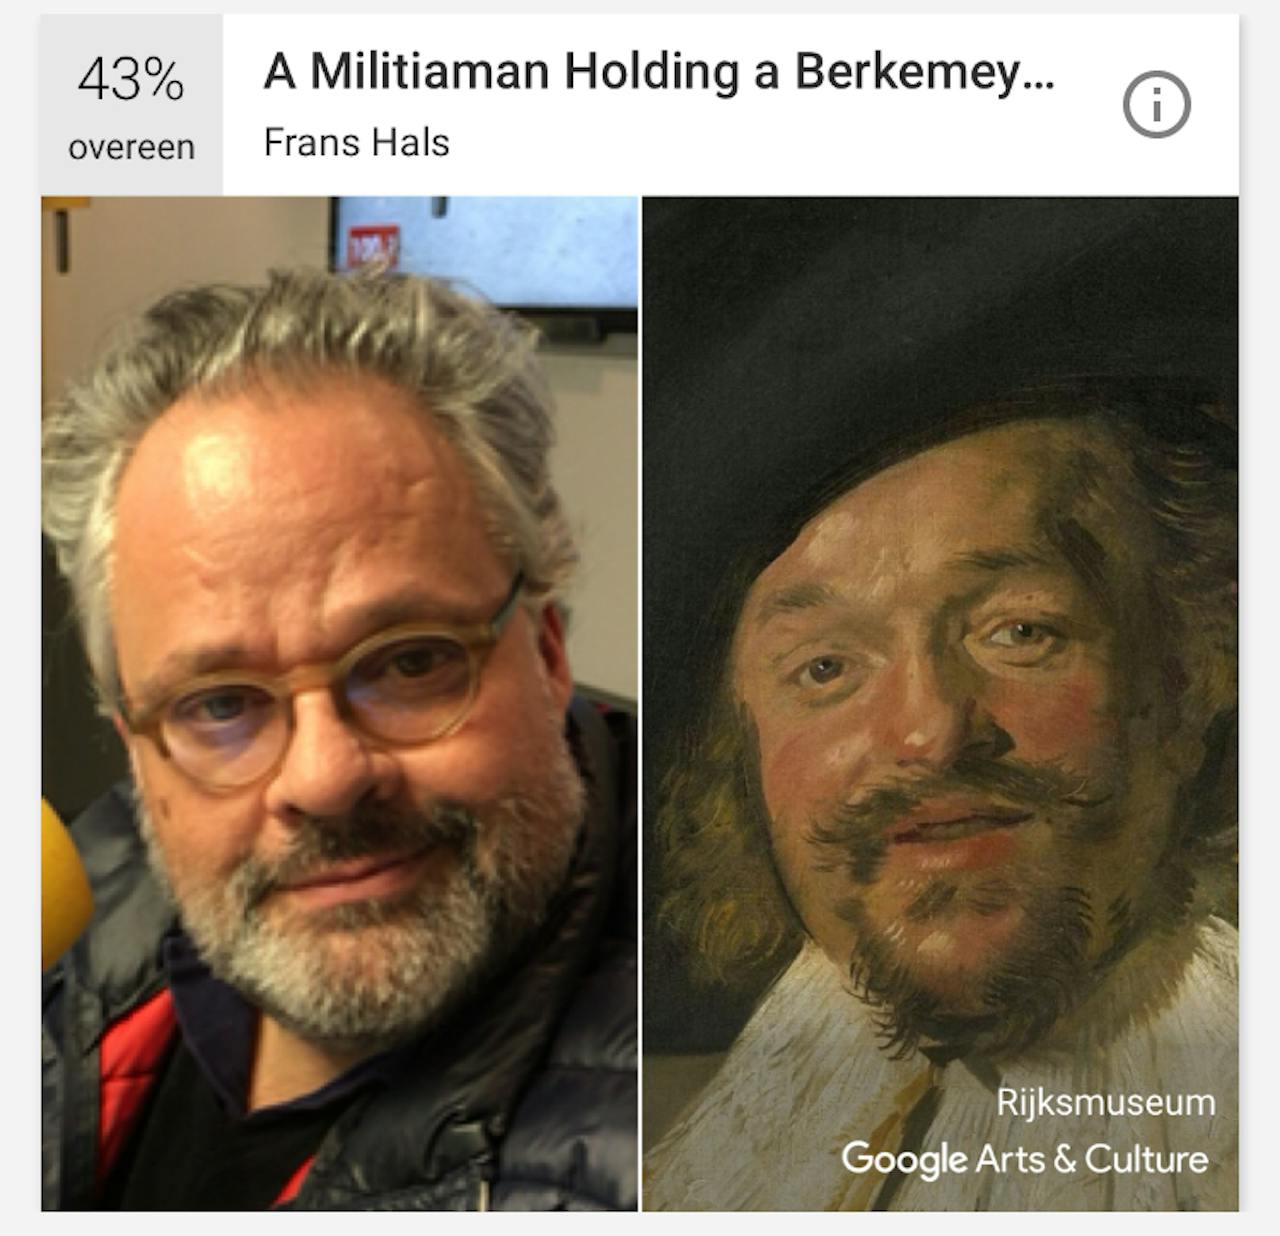 Bas van Werven (links) lijkt volgens de app het meeste op de persoon uit 'A Militiaman Holding a Berkemeyer, Known as the 'Merry Drinker' van Frans Hals